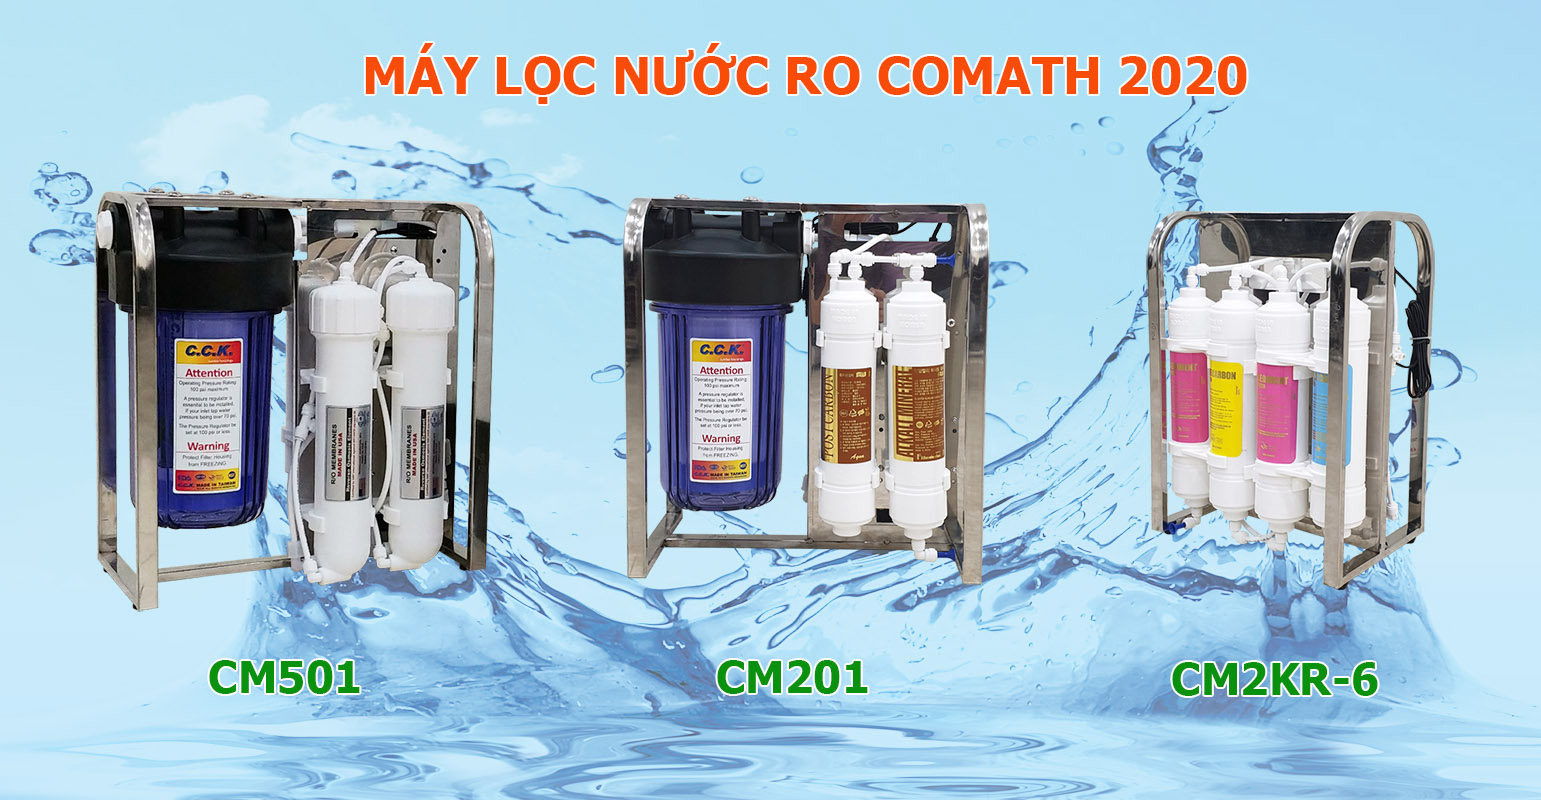 Máy lọc nước RO Comath 2020 THẾ HỆ MỚI – TỐT HƠN – HIỆU QUẢ HƠN